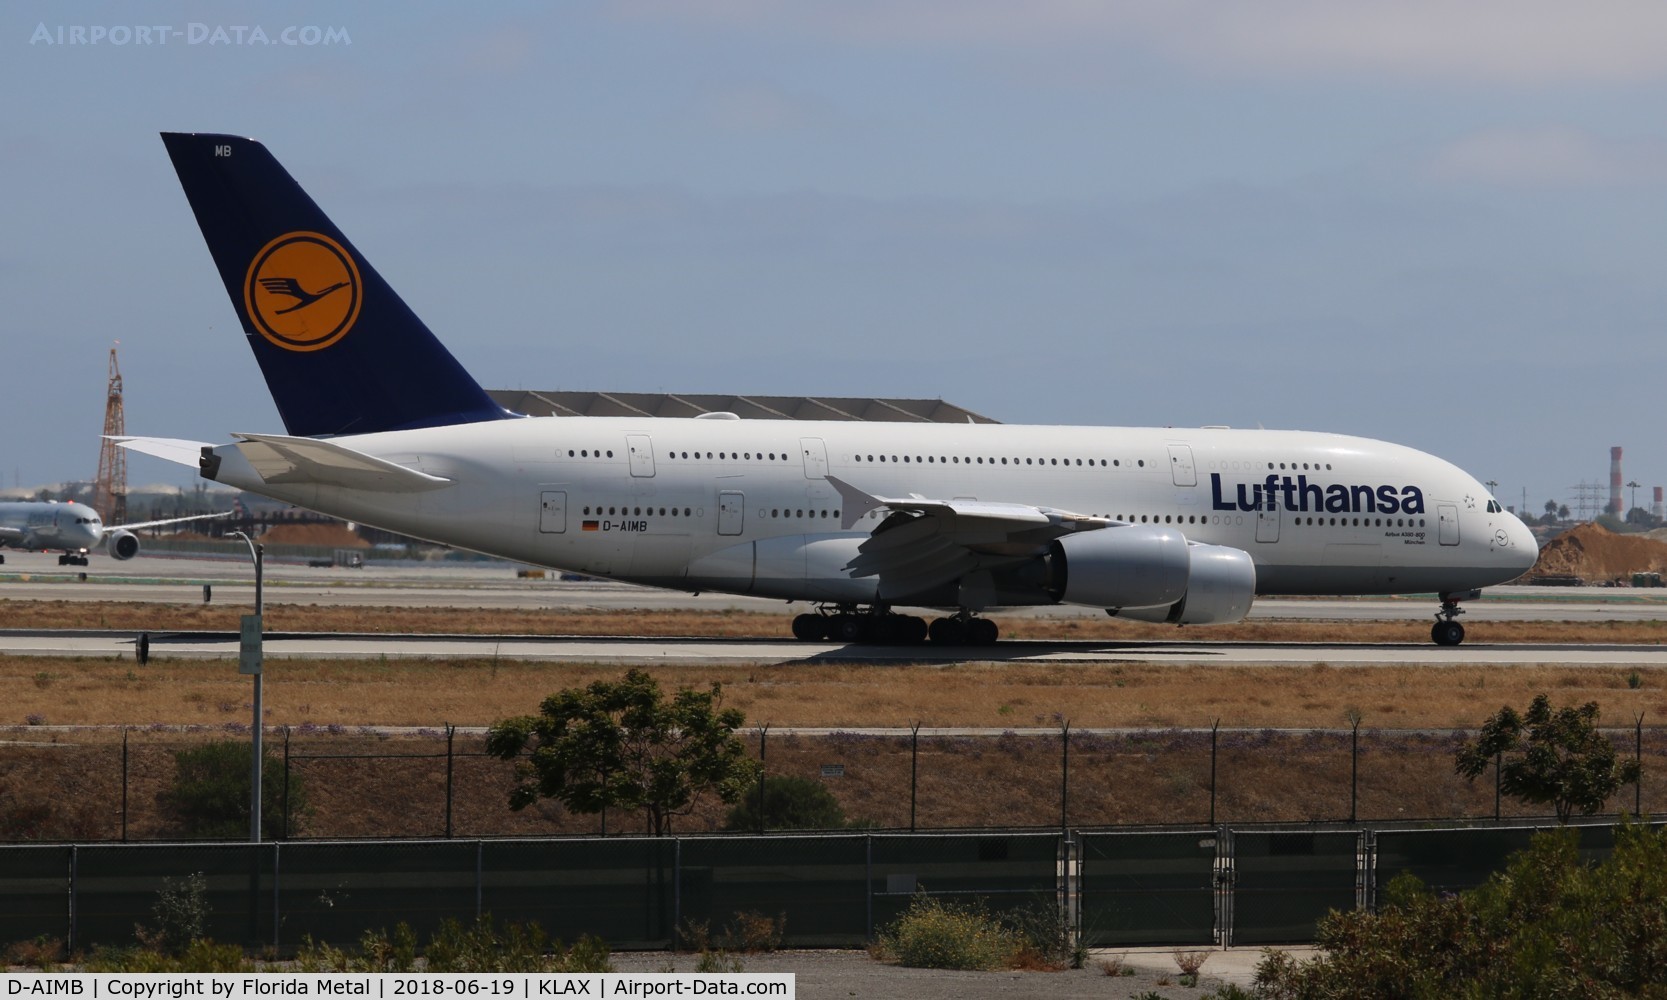 D-AIMB, 2010 Airbus A380-841 C/N 041, LAX spotting